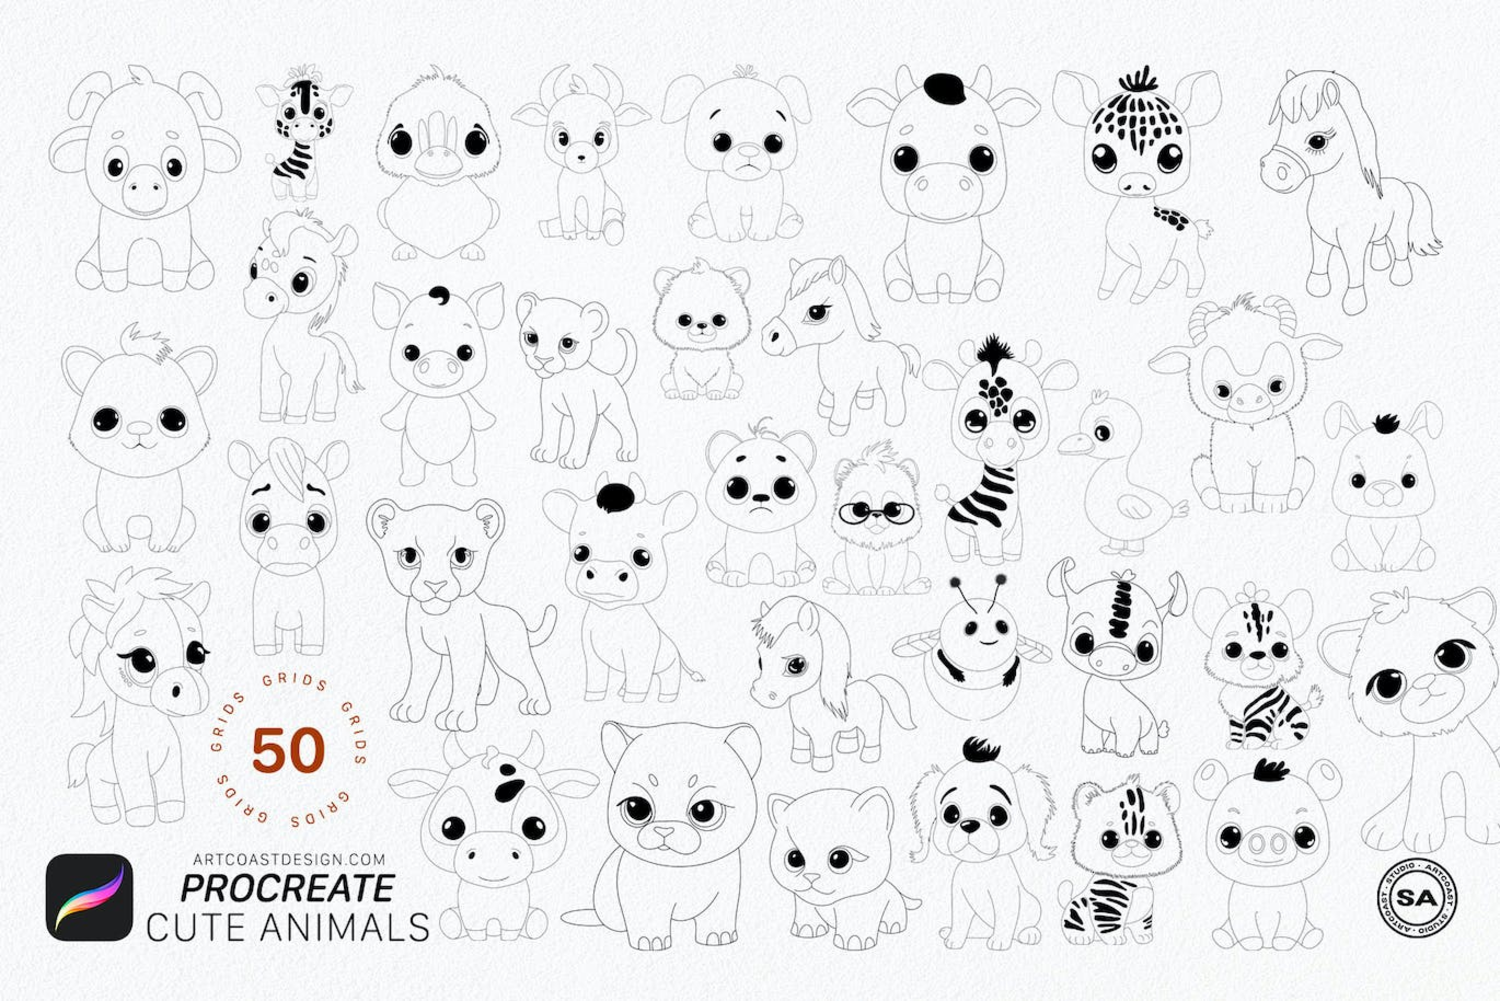 5282 50个iPad Procreate可爱的动物线稿笔刷procreate-cute-animals-grids@GOOODME.COM